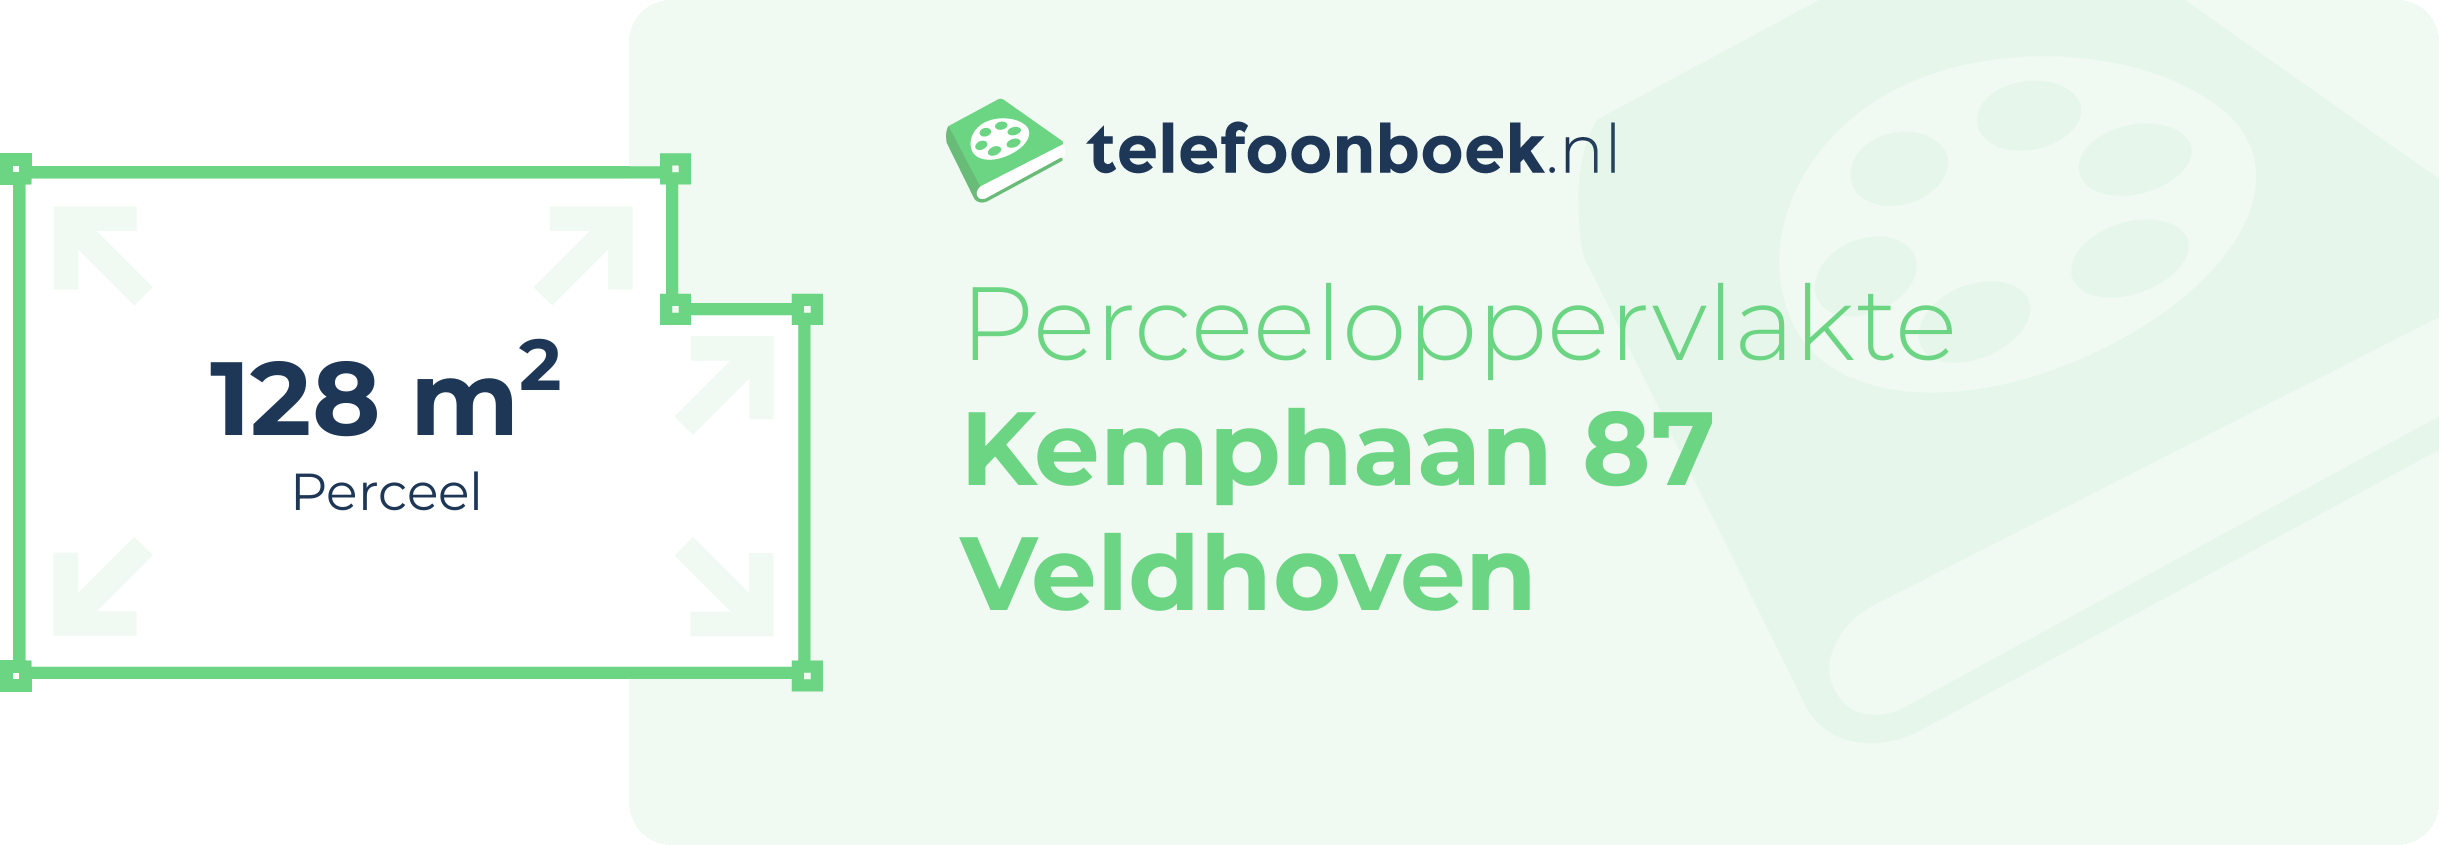 Perceeloppervlakte Kemphaan 87 Veldhoven